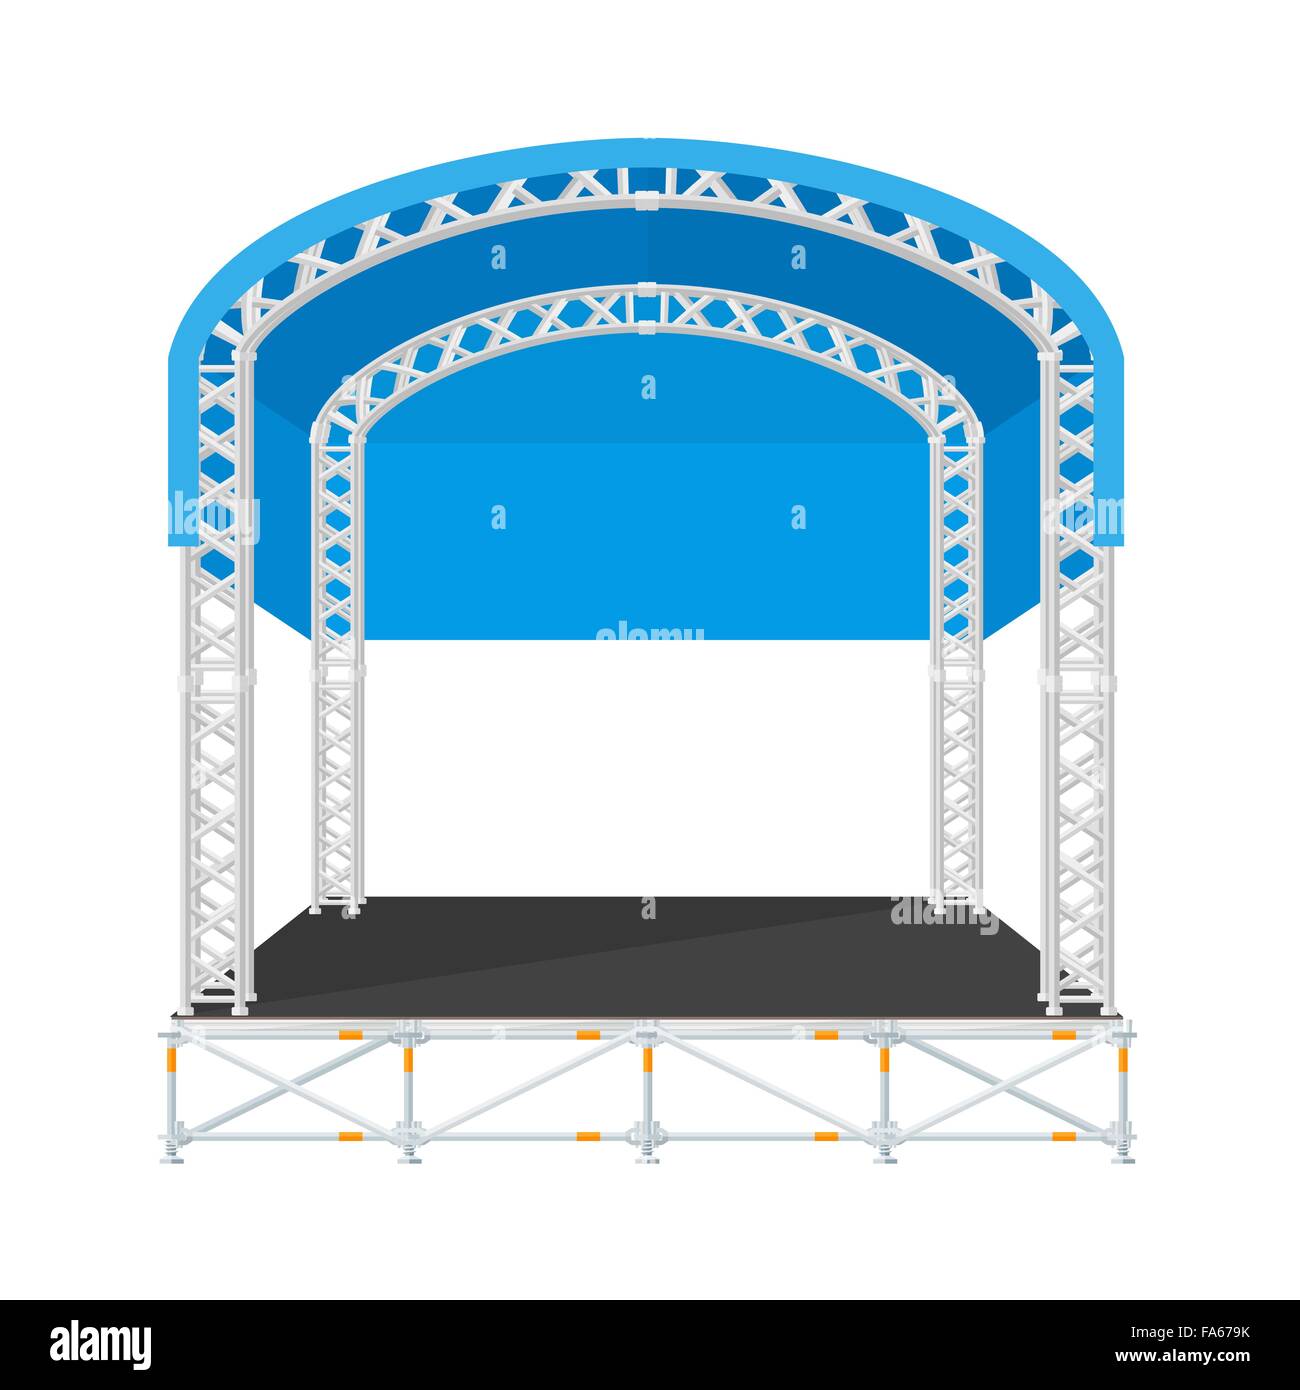 Télévision en coupe style vector precast concert metal scène avec toit arrondi bleu illustration isolé sur fond blanc Illustration de Vecteur